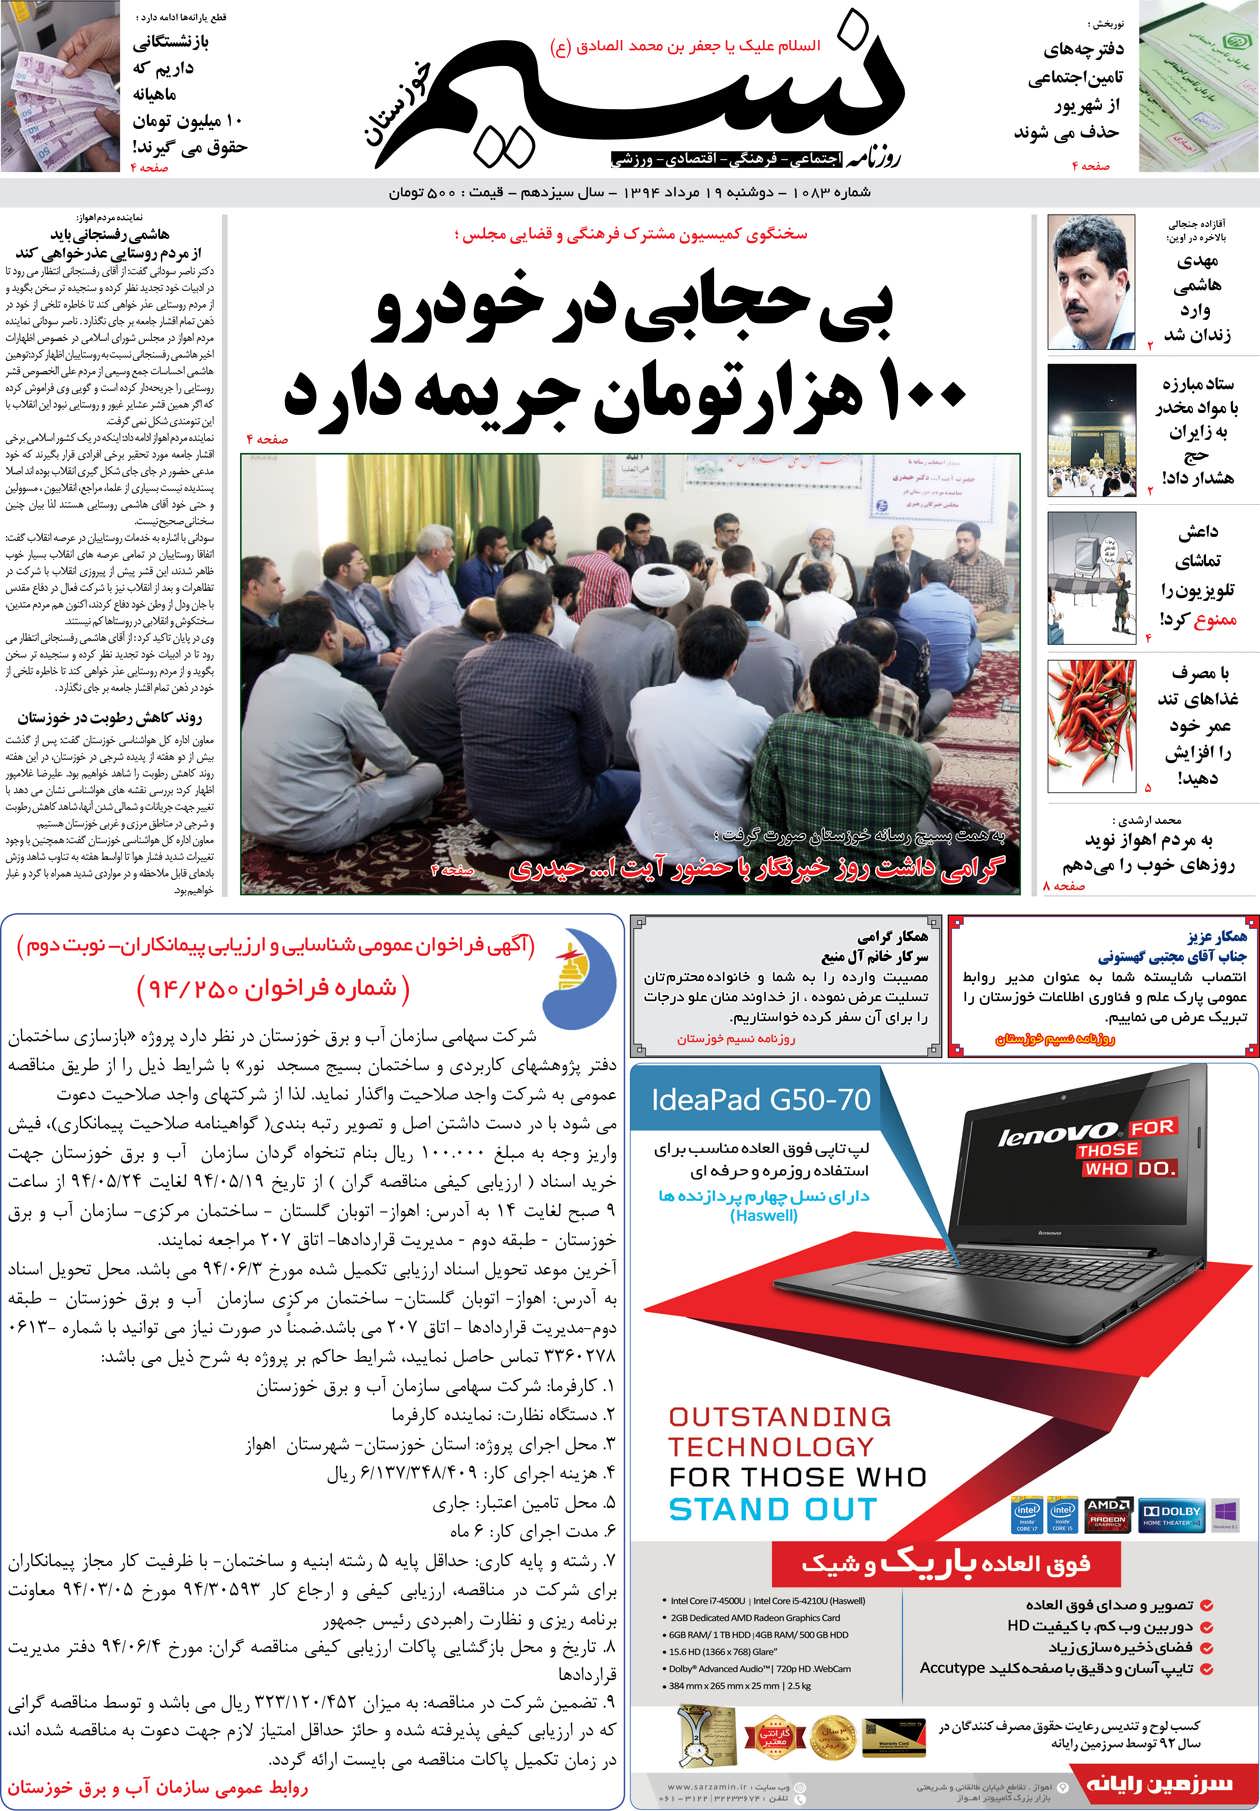 صفحه اصلی روزنامه نسیم شماره 1083